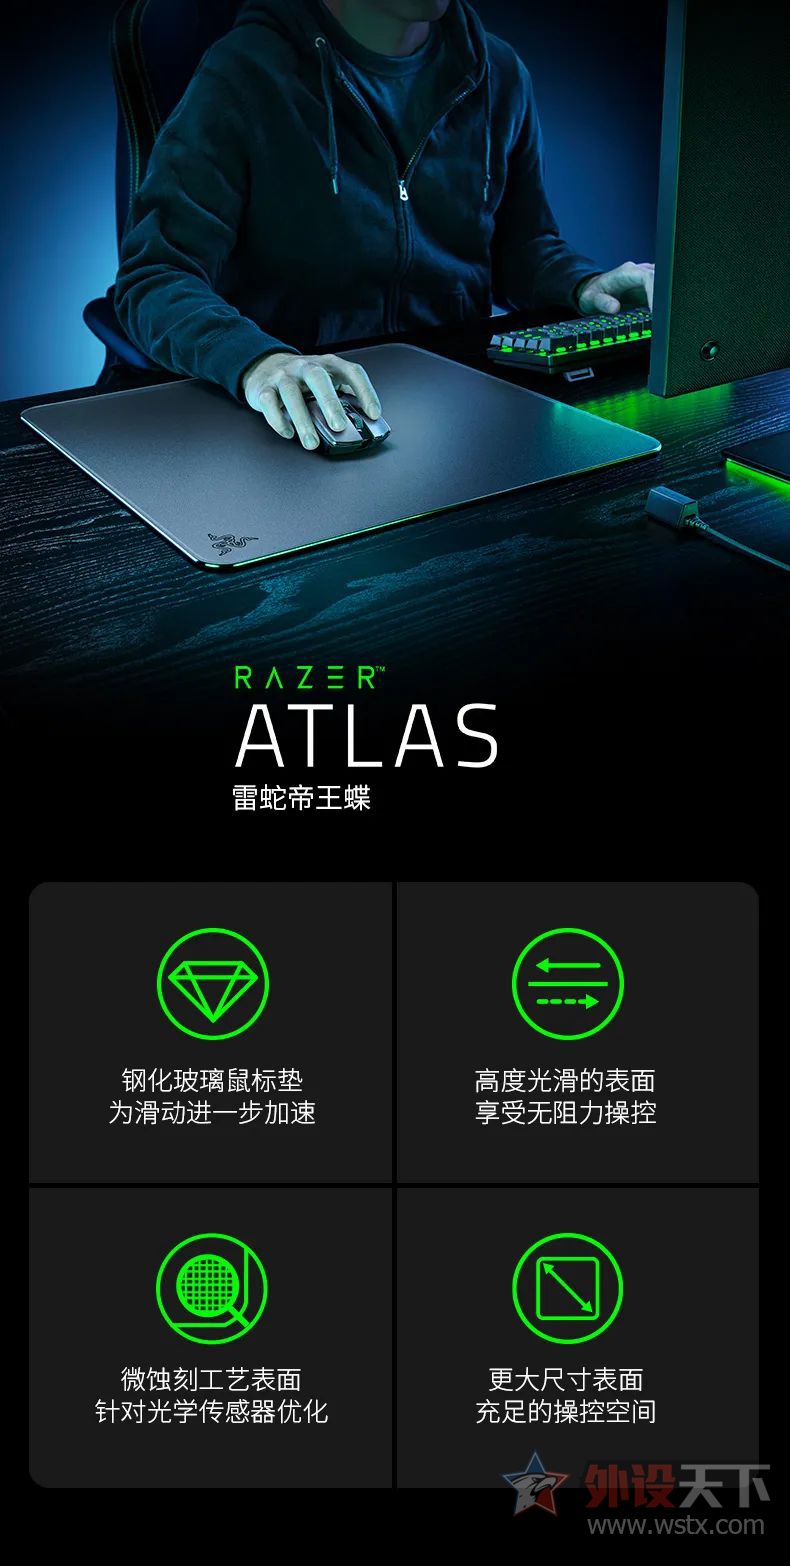 雷蛇发布新品ATLAS帝王蝶玻璃鼠标垫         